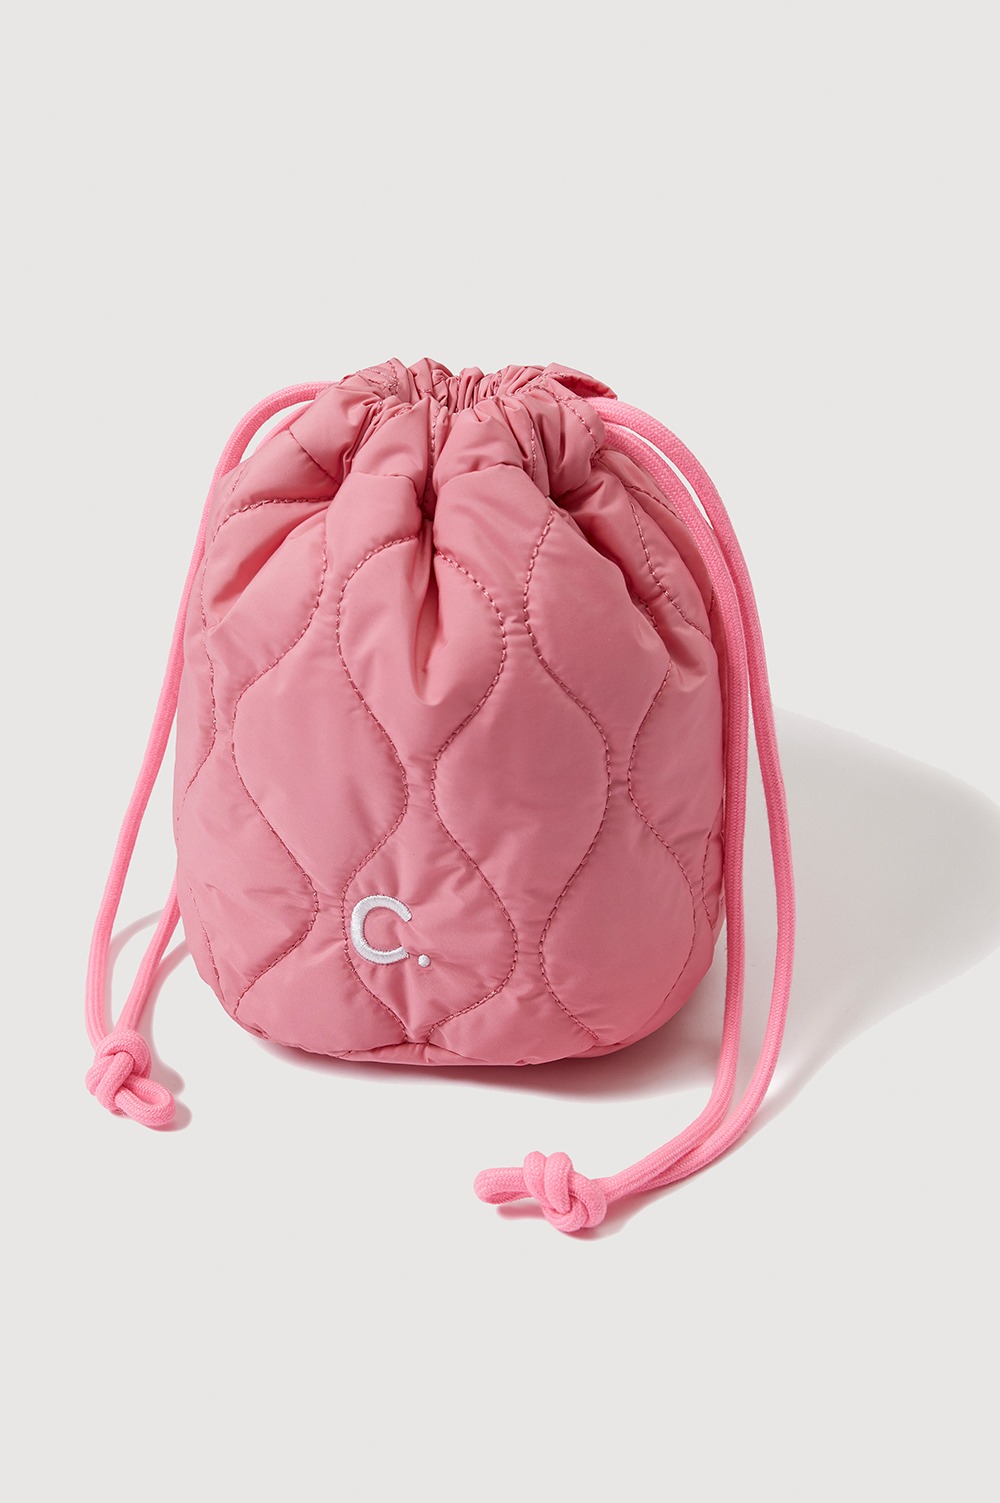 clove - [22FW clove] Quilting Bag (Pink)